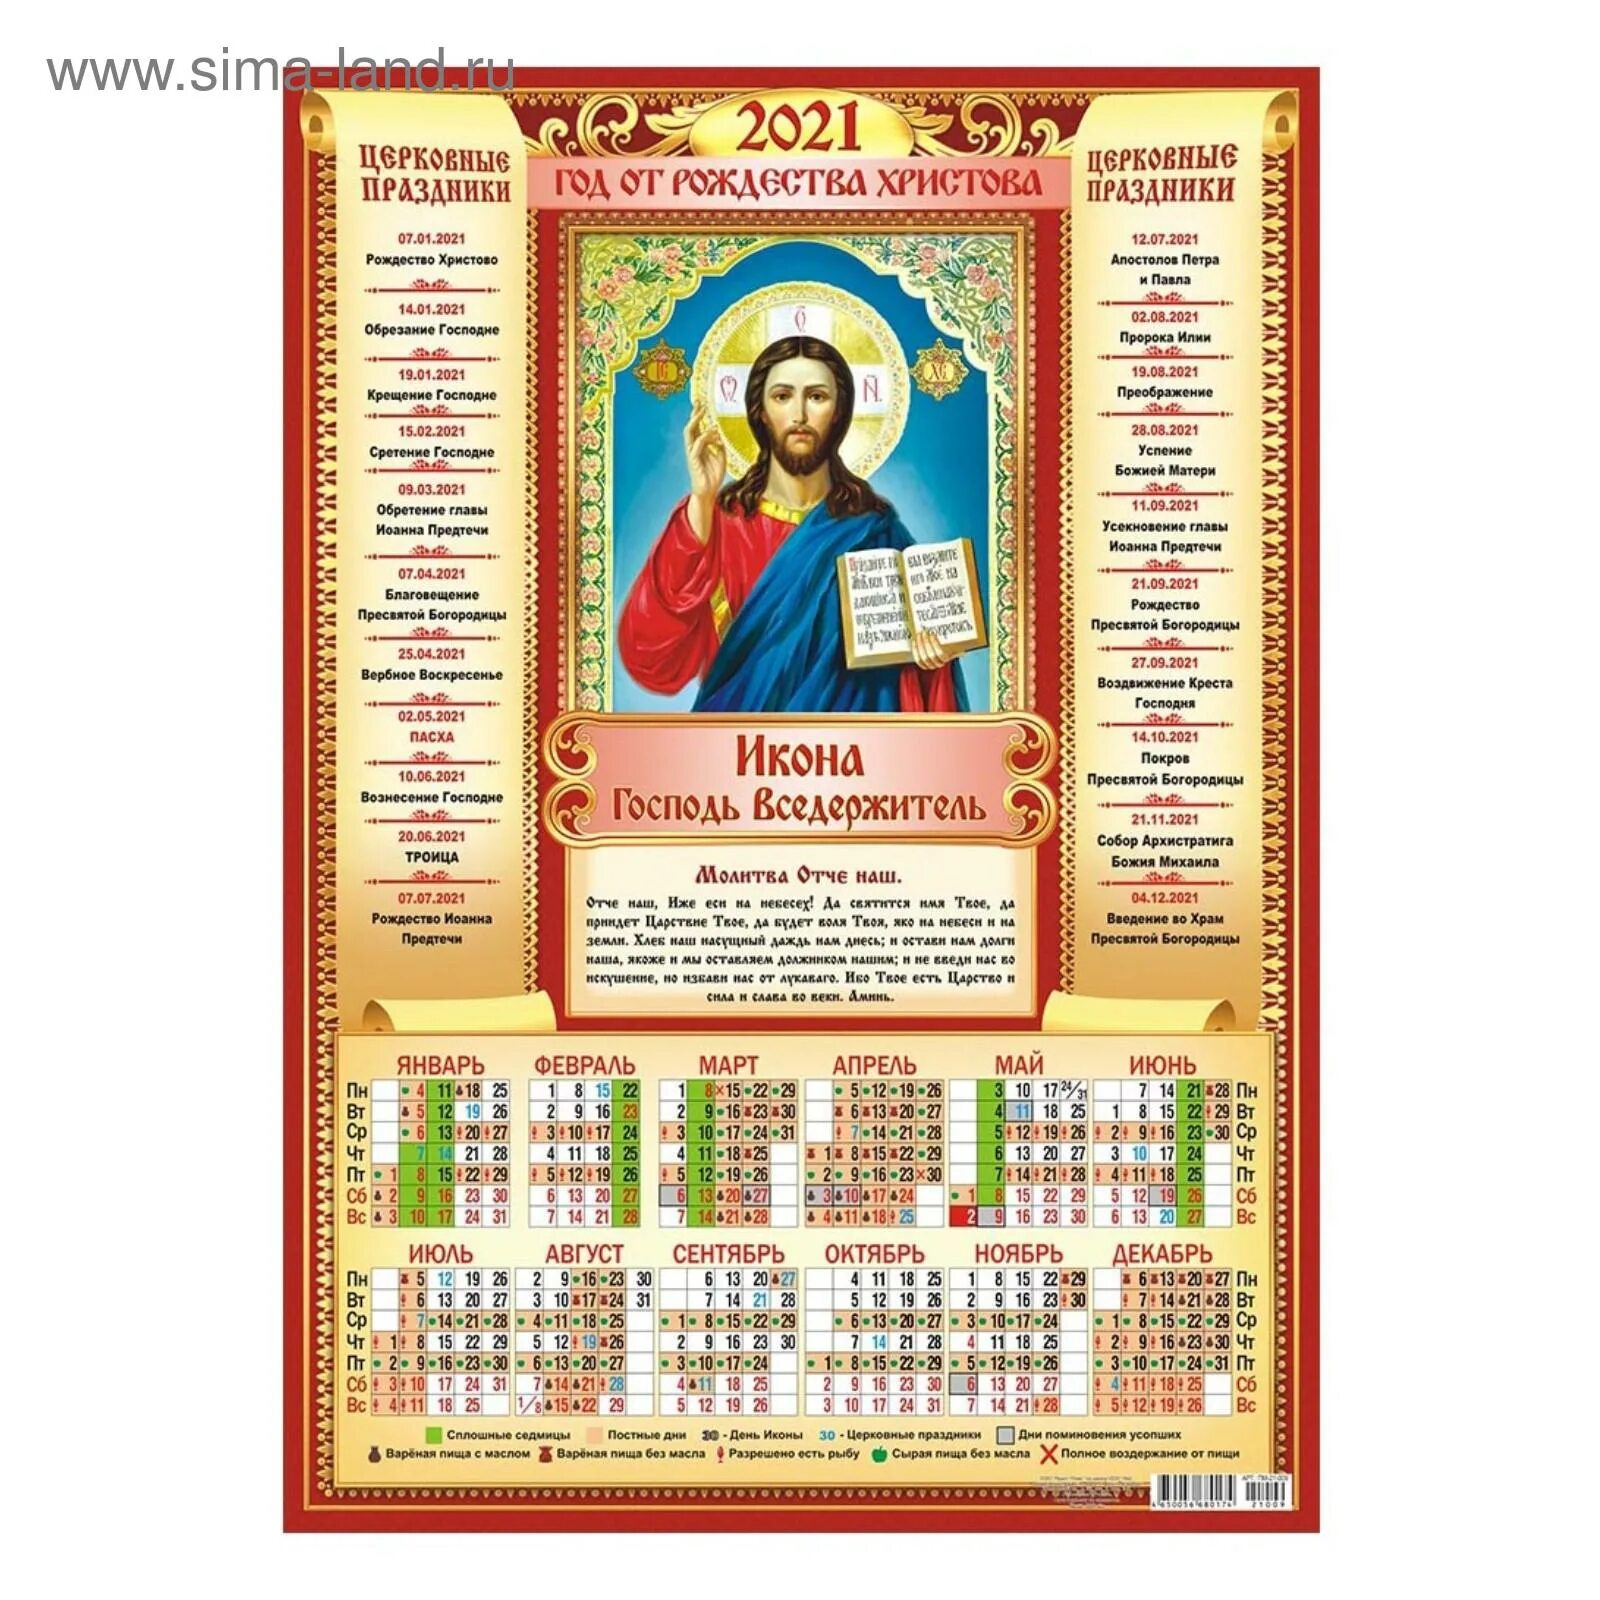 Православный календарь на 2022. Православный календарь на 2022 год. Православный календарь макет. Православный календарь 2021. Календарь православных праздников в апреле